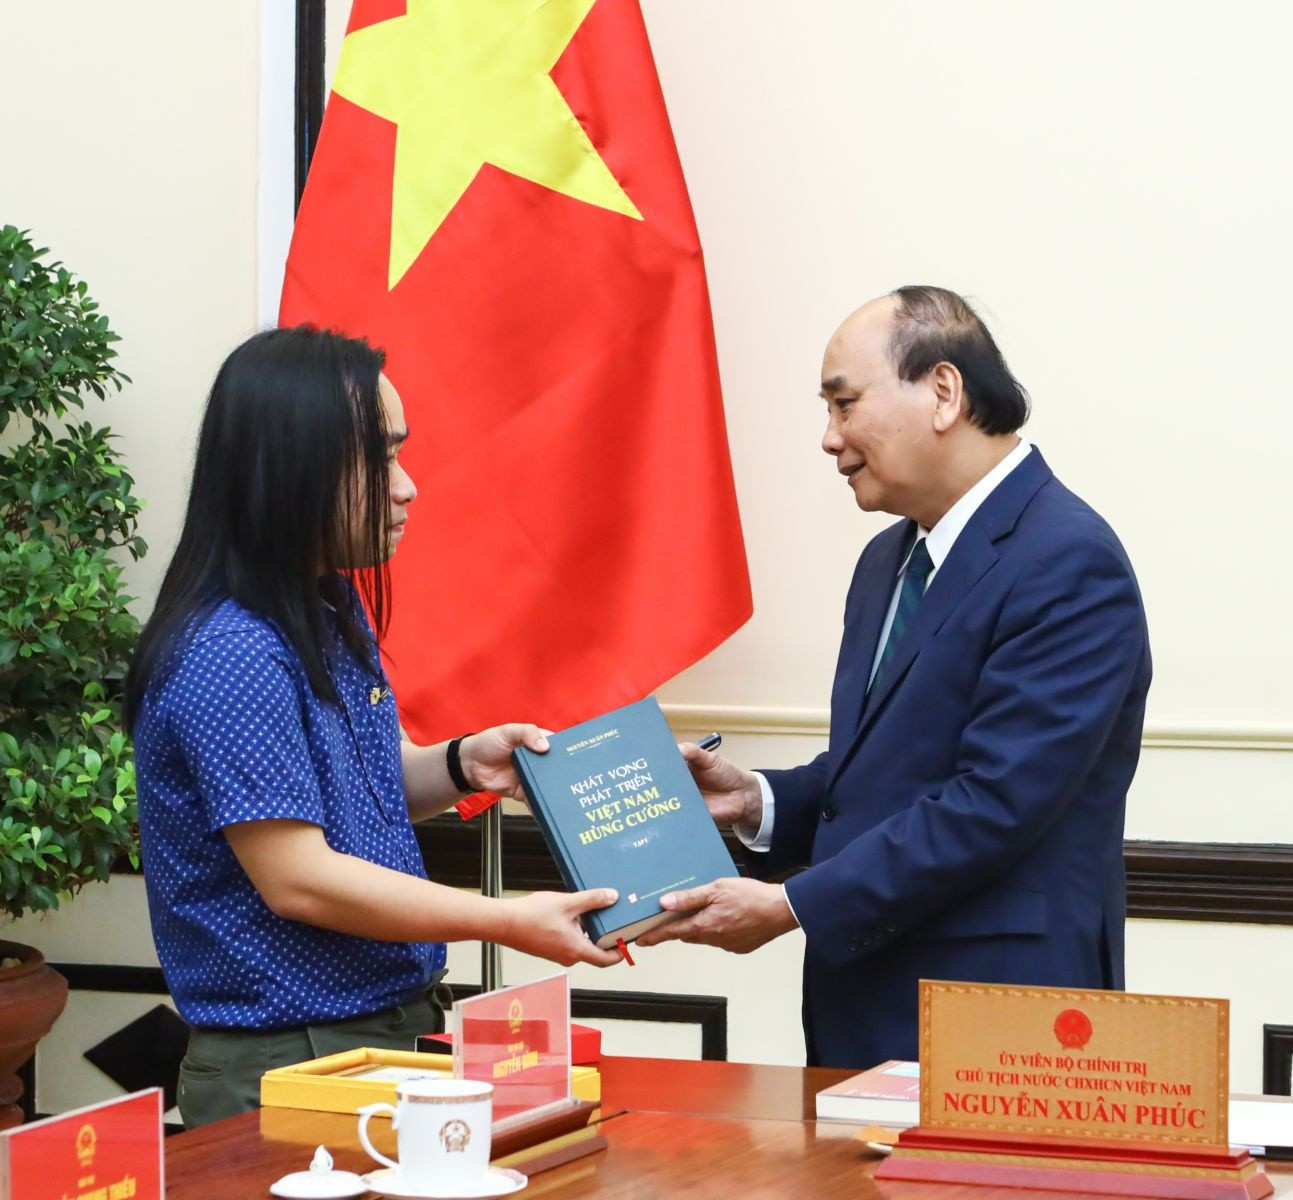 Chủ tịch nước gặp du học sinh dịch 'Truyện Kiều' của Nguyễn Du sang tiếng Anh - ảnh 1